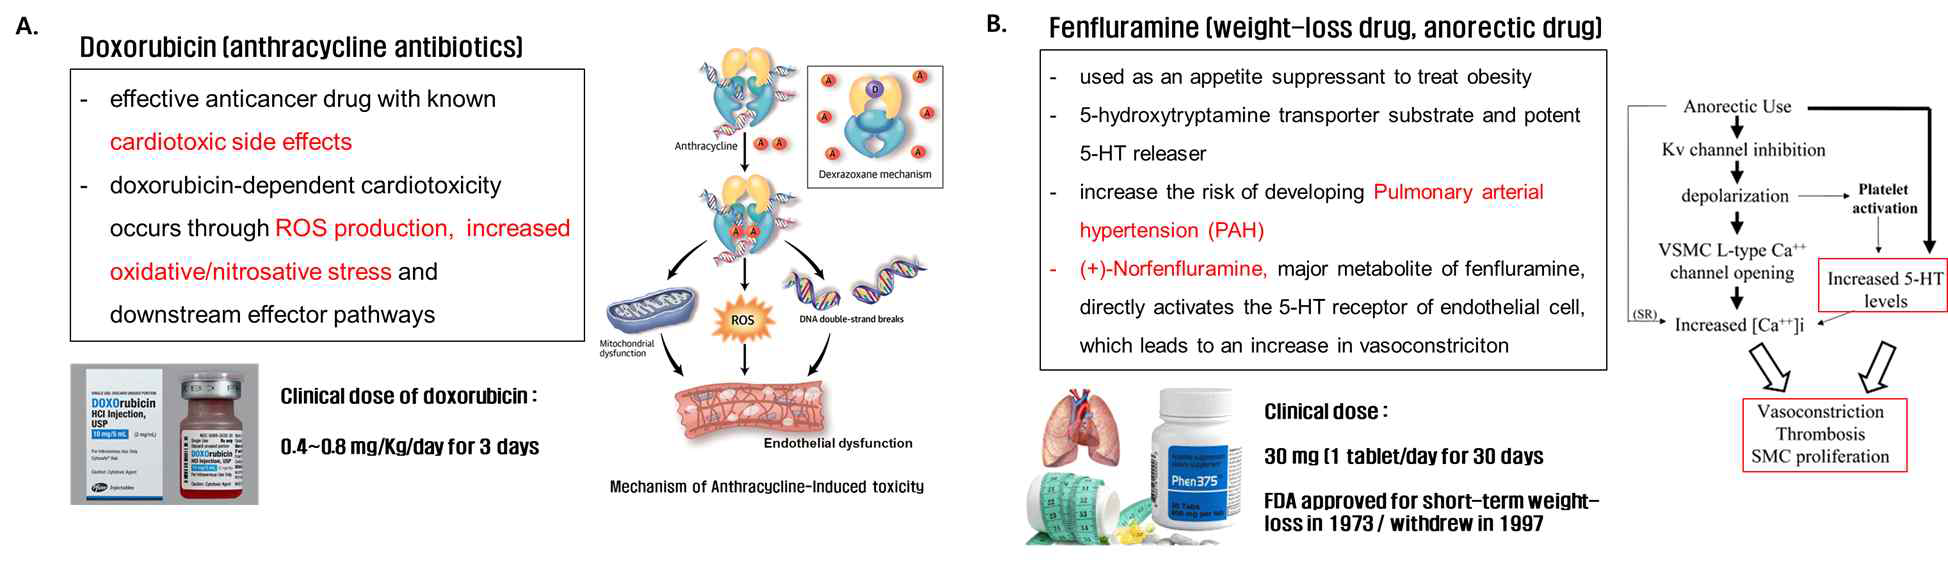 Reference drug 선정 (A) doxorubicin의 심장독성 작용기작 (B) fenfluramine의 혈관내피세 포 기능 장애 작용기작